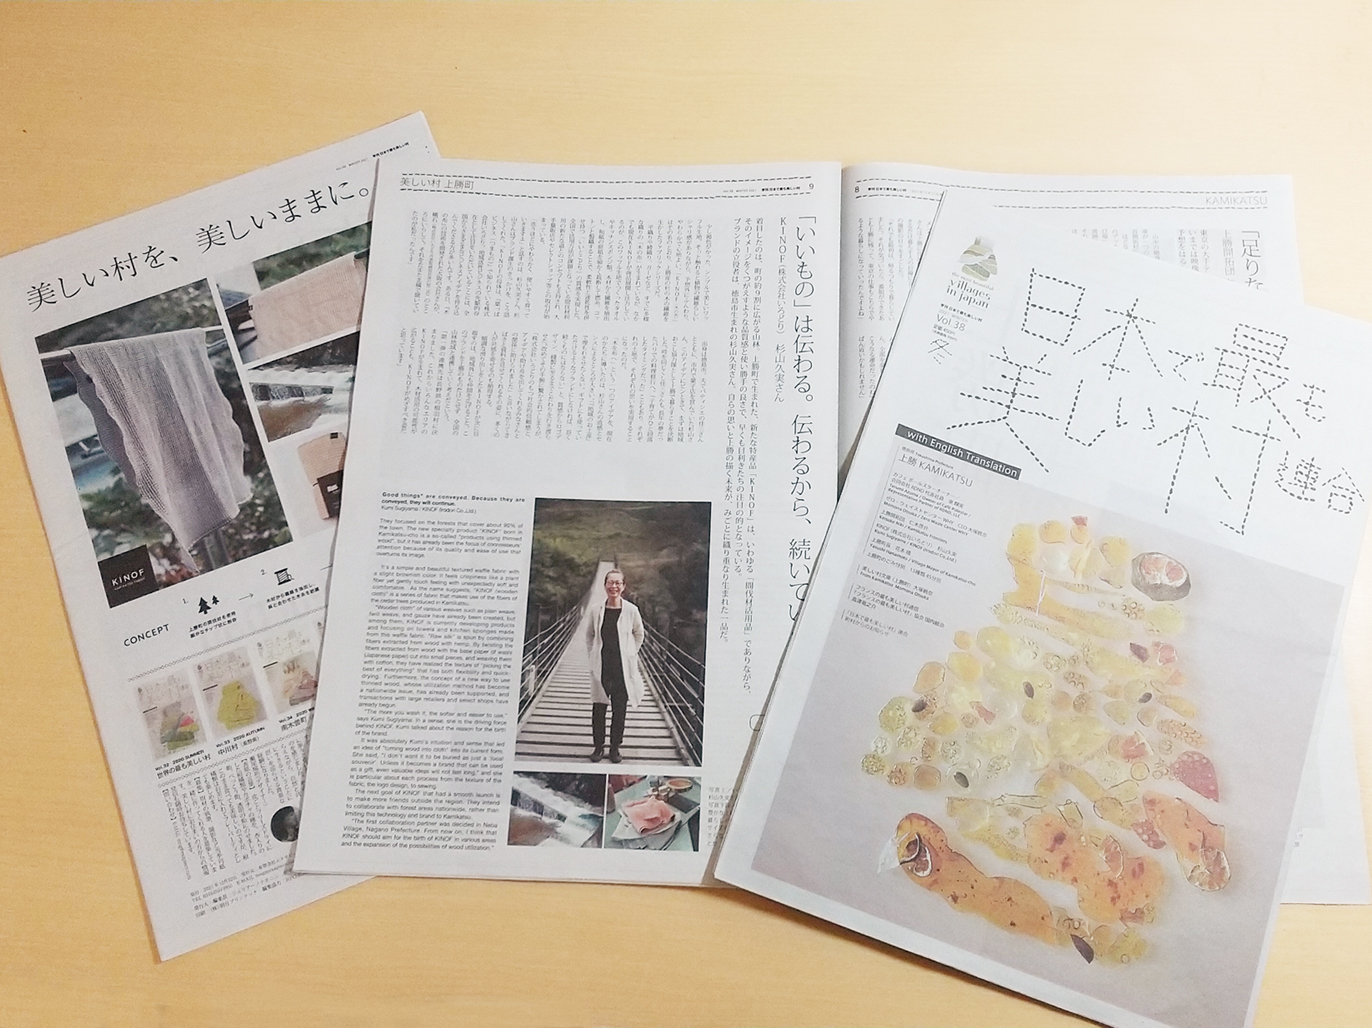 日本で最も美しい村連合 季刊誌 冬 上勝町特集で掲載